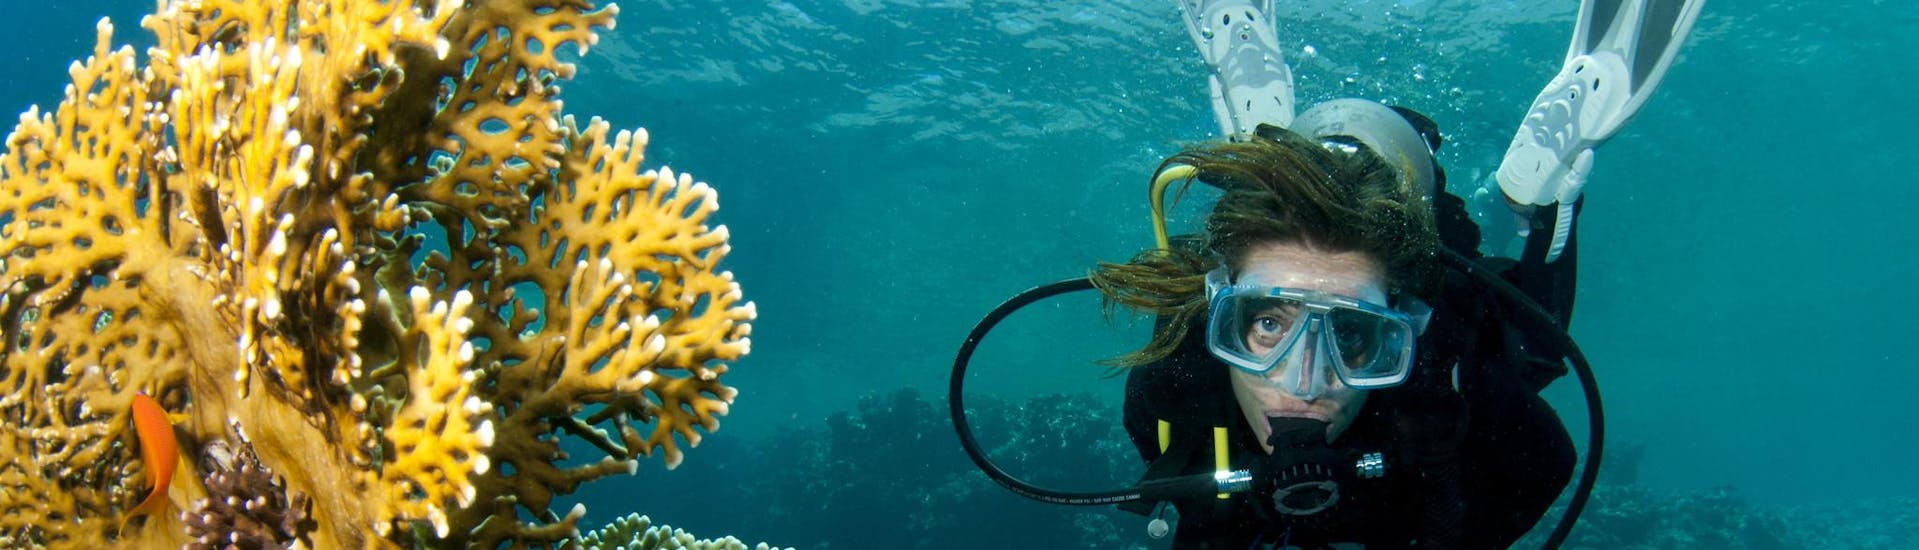 Eine Frau hat Spaß beim Tauchen in Riffen und Korallen.